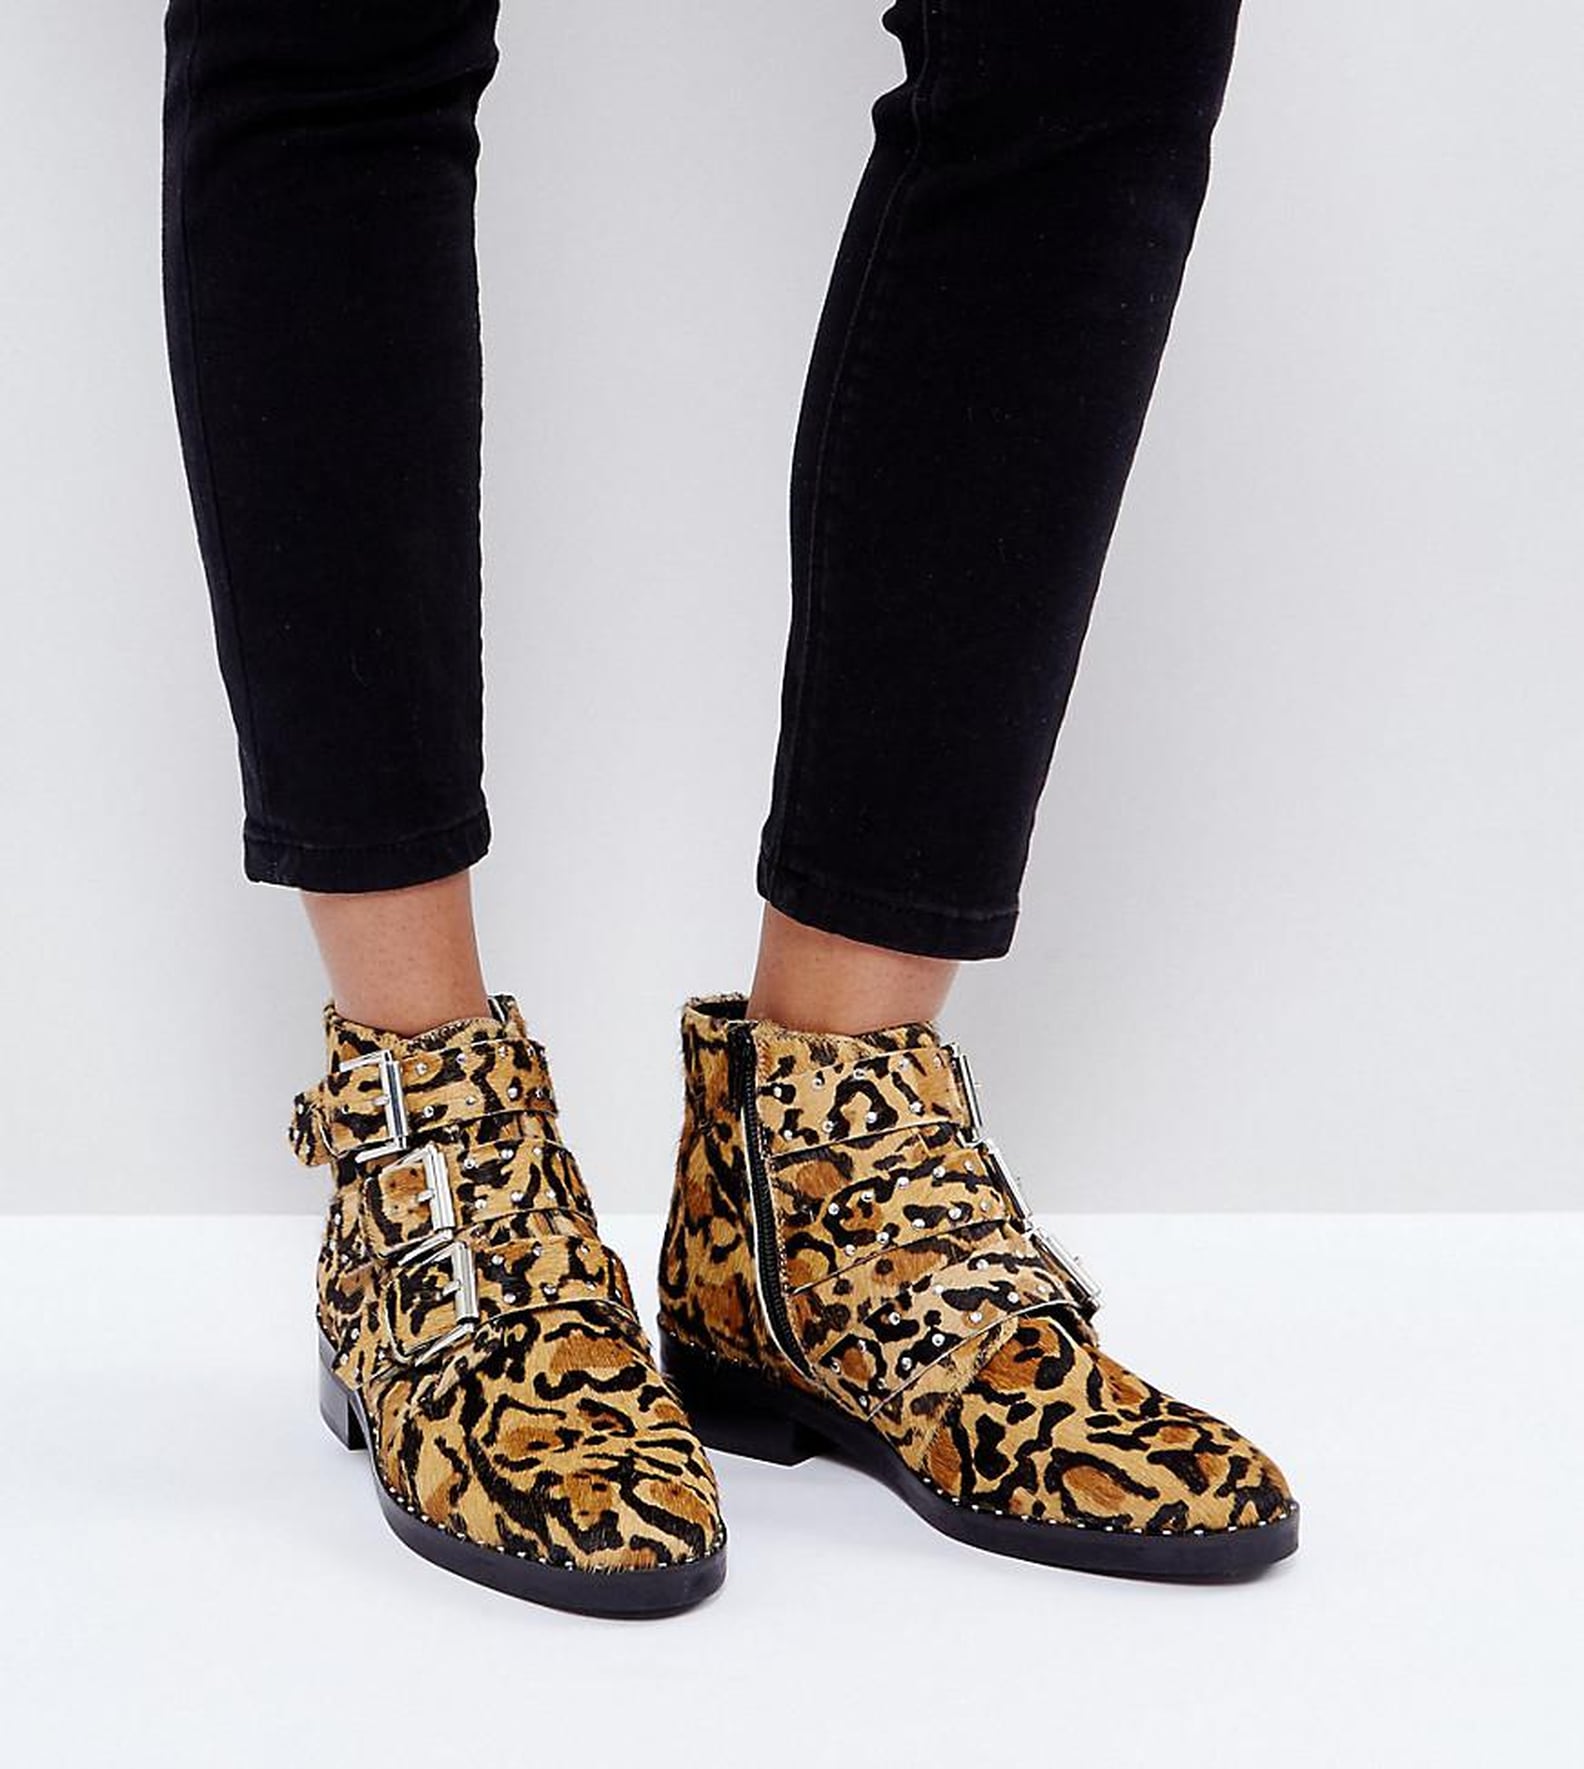 Gigi Hadid Leopard Boots | POPSUGAR Fashion